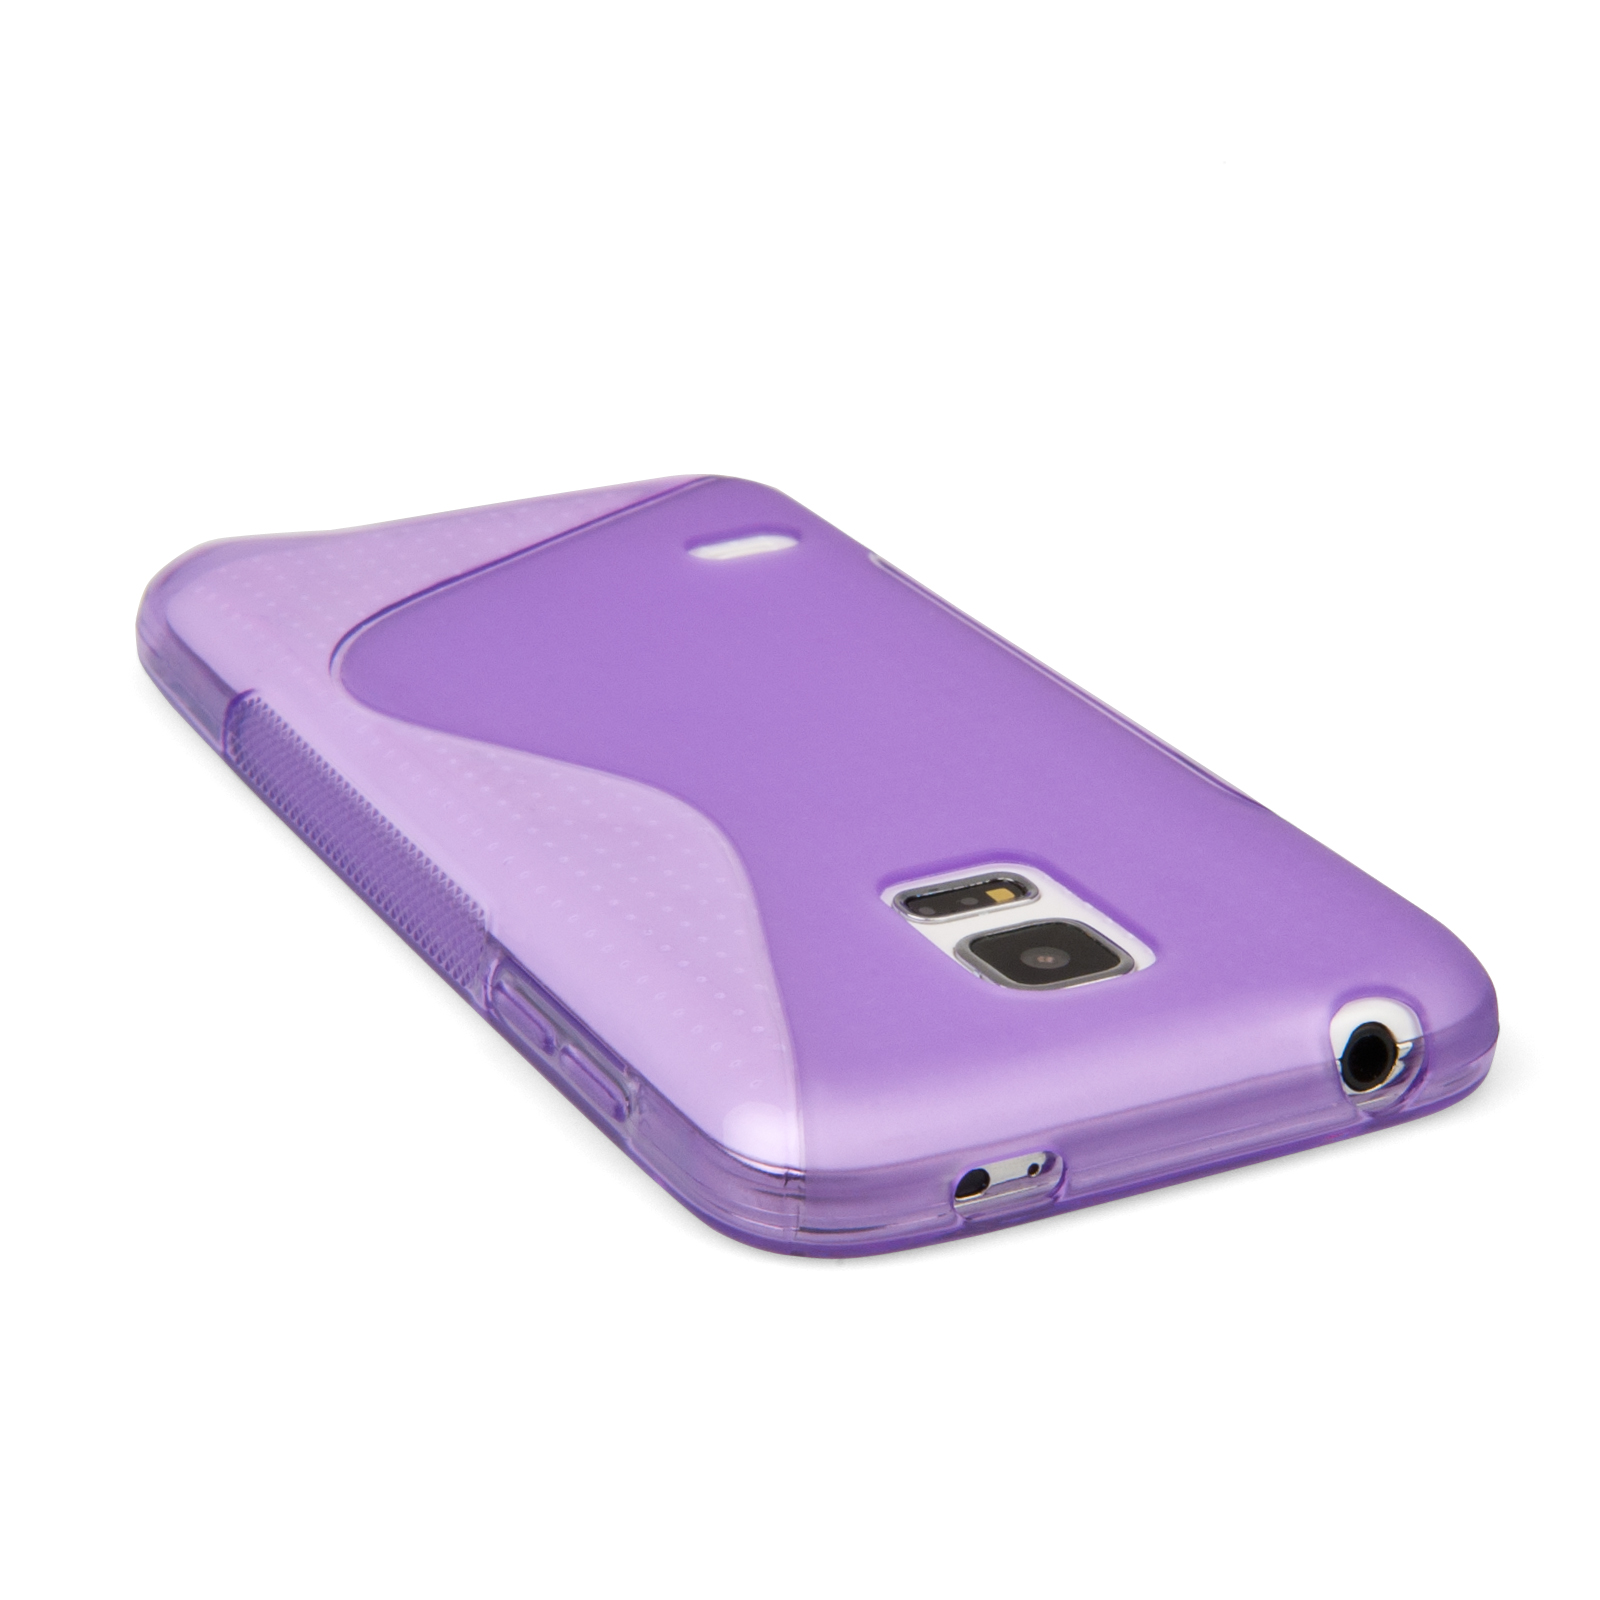 Caseflex Samsung Galaxy S5 Mini Silicone Gel S-Line Case - Purple